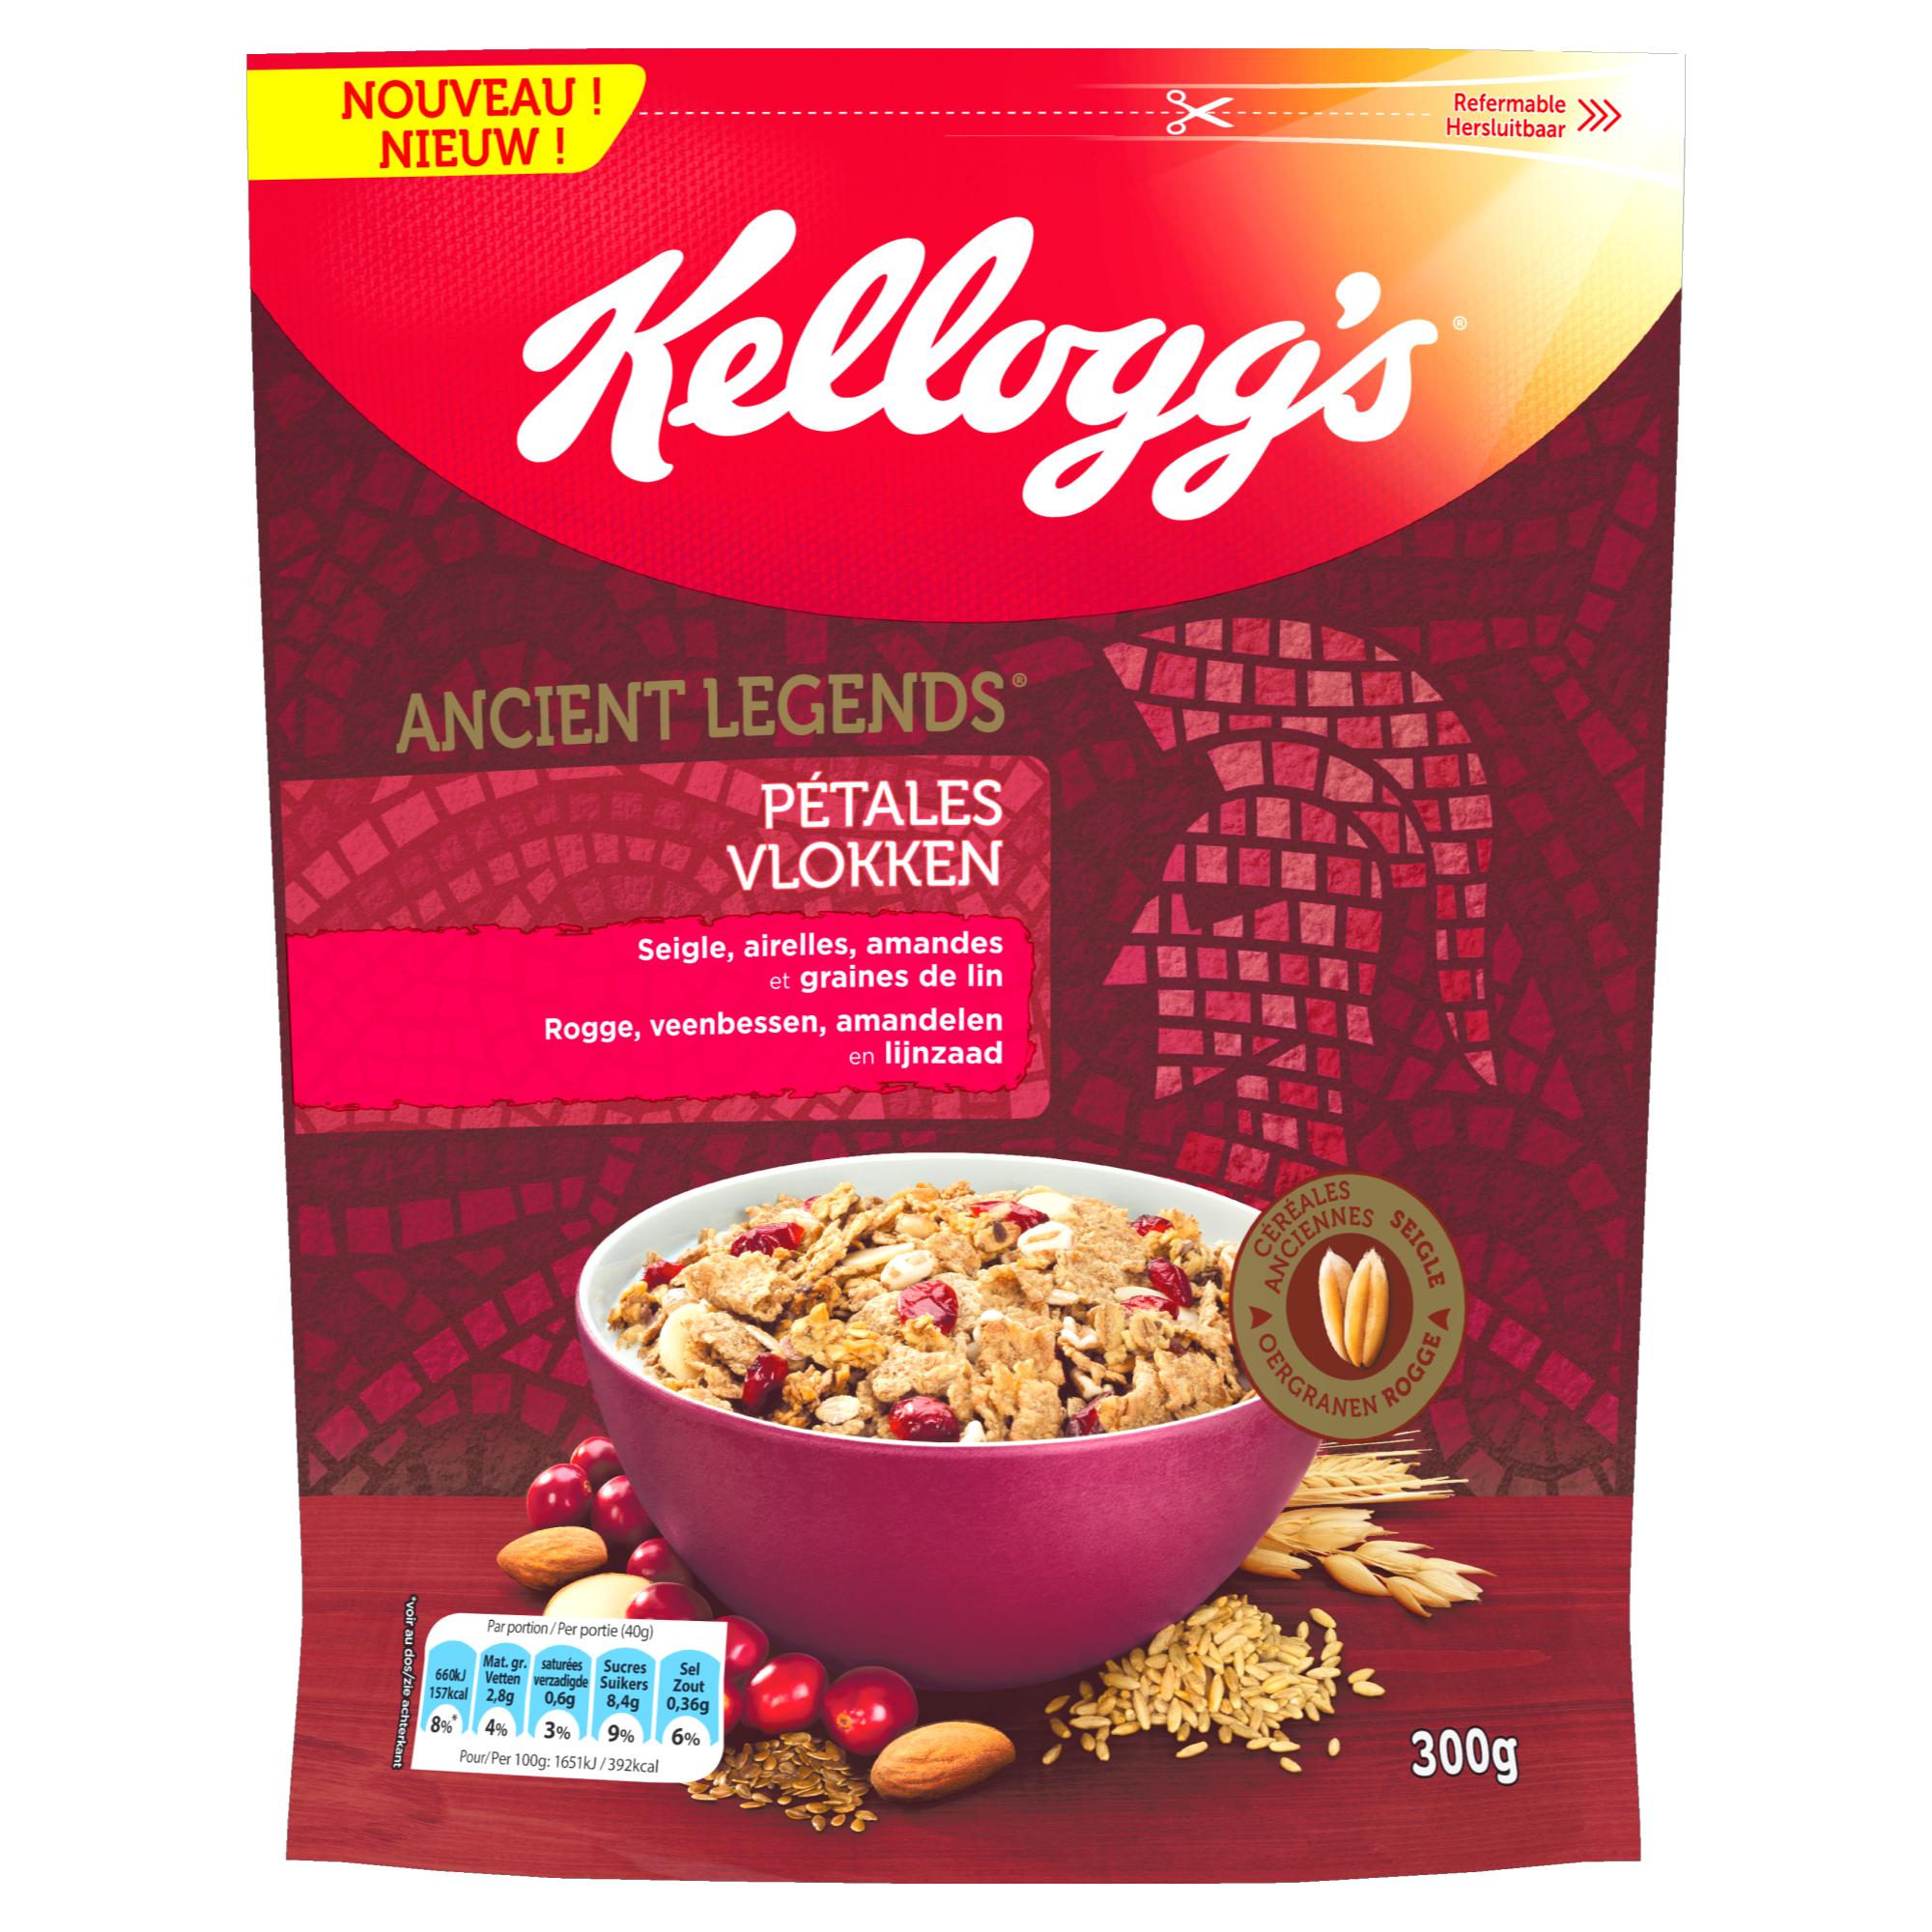 KELLOGG’S : céréales anciennes remises au goût du jour